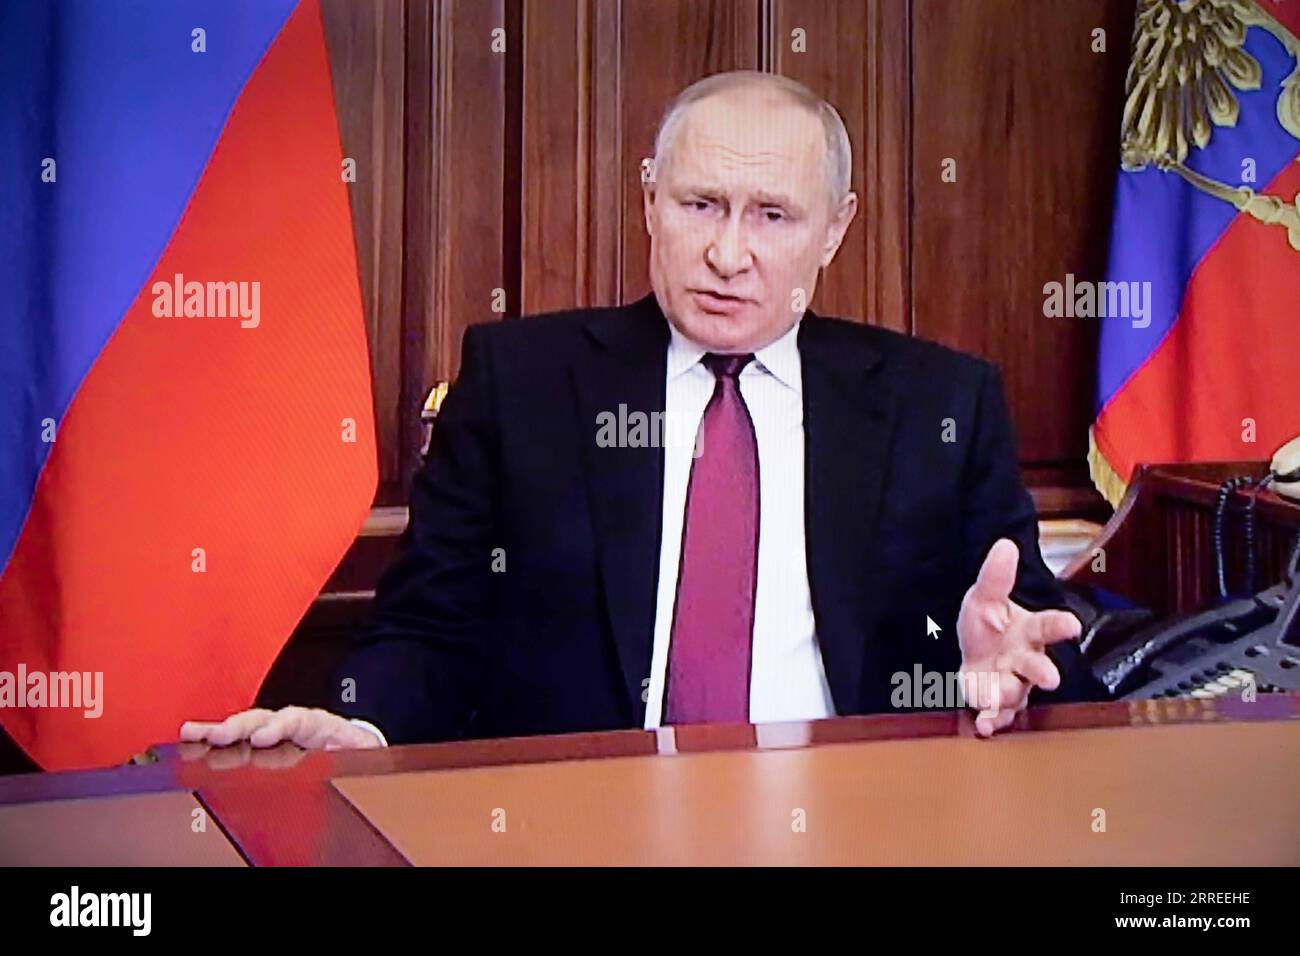 220224 -- MOSCOU, le 24 février 2022 -- une photo prise le 24 février 2022 montre un écran montrant le président russe Vladimir Poutine s'exprimant lors d'un discours télévisé, à Moscou, en Russie. Poutine a autorisé jeudi une opération militaire spéciale en réponse à l'appel des dirigeants des républiques de la région du Donbass. RUSSIE-MOSCOU-POUTINE-DISCOURS TÉLÉVISÉ BaixXueqi PUBLICATIONxNOTxINxCHN Banque D'Images